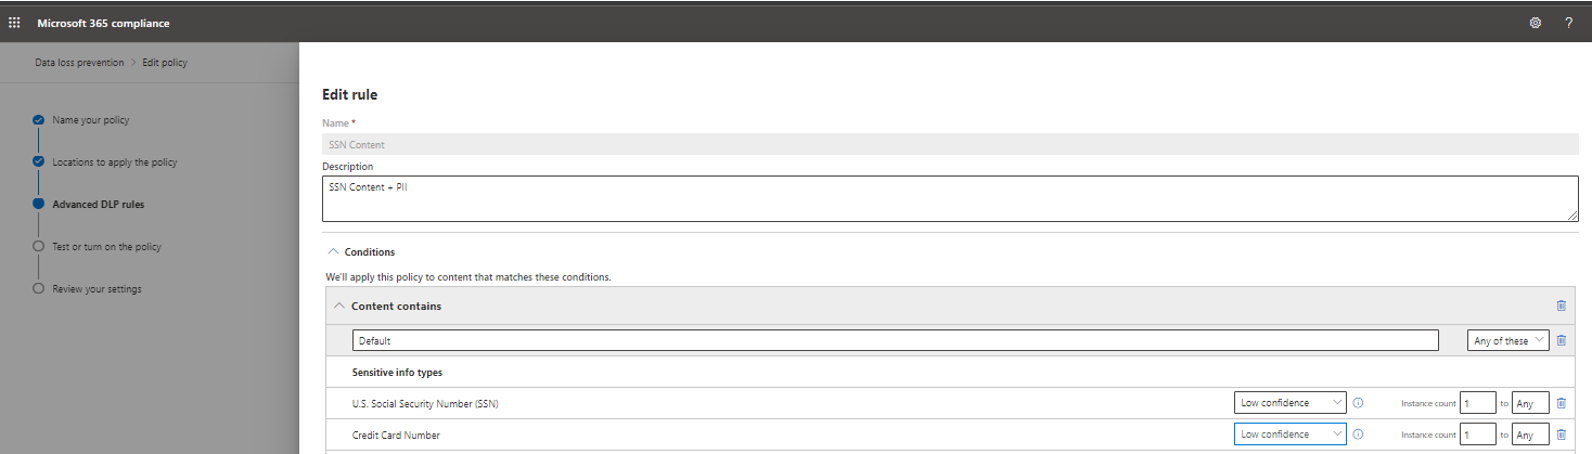 Captura de tela da regra de conteúdo SSN configurada para ter a detecção com base em tipos de informações confidenciais.